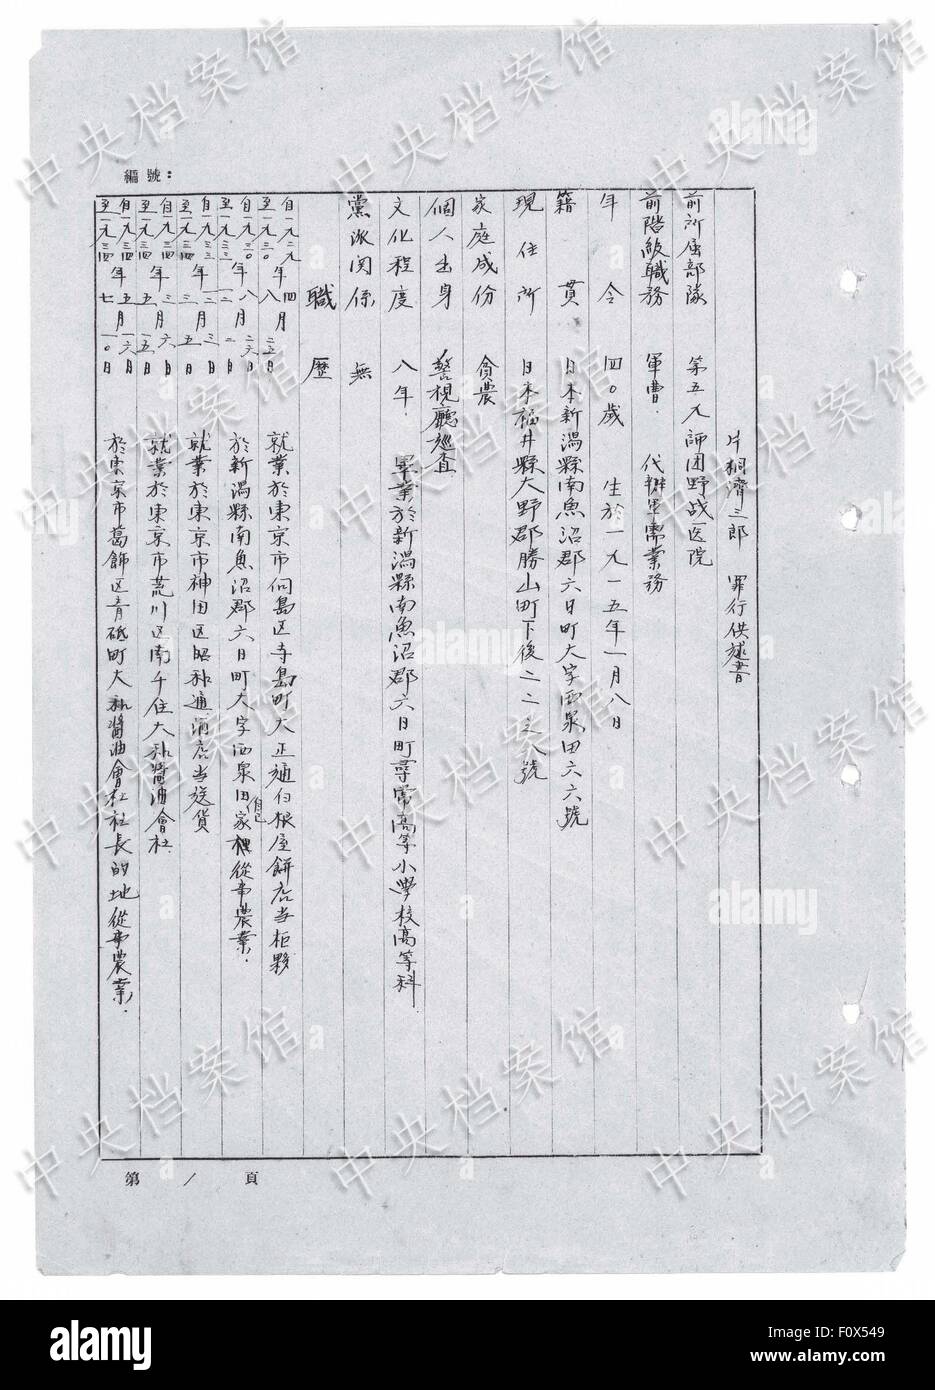 (150822) -- BEIJING, 22 août, 2015 (Xinhua) -- Photo publié le 22 août 2015 par l'administration des archives de l'état de Chine sur son site internet montre la version chinoise d'un extrait de criminel de guerre japonais Seizaburo confession manuscrite de Katagiri. En fonction de la confession écrite d'Seizaburo Katagiri, publié par les Archives d'état de l'Administration (ASA), il faisait partie d'une équipe qui a effectué une vivisection sur un chinois "à étudier l'anatomie humaine'. Seizaburo, capturé en 1945, a avoué qu'à l'hôpital de l'Armée de Harbin en 1936, il a été chargé de supprimer les organes de l'homme, un Banque D'Images